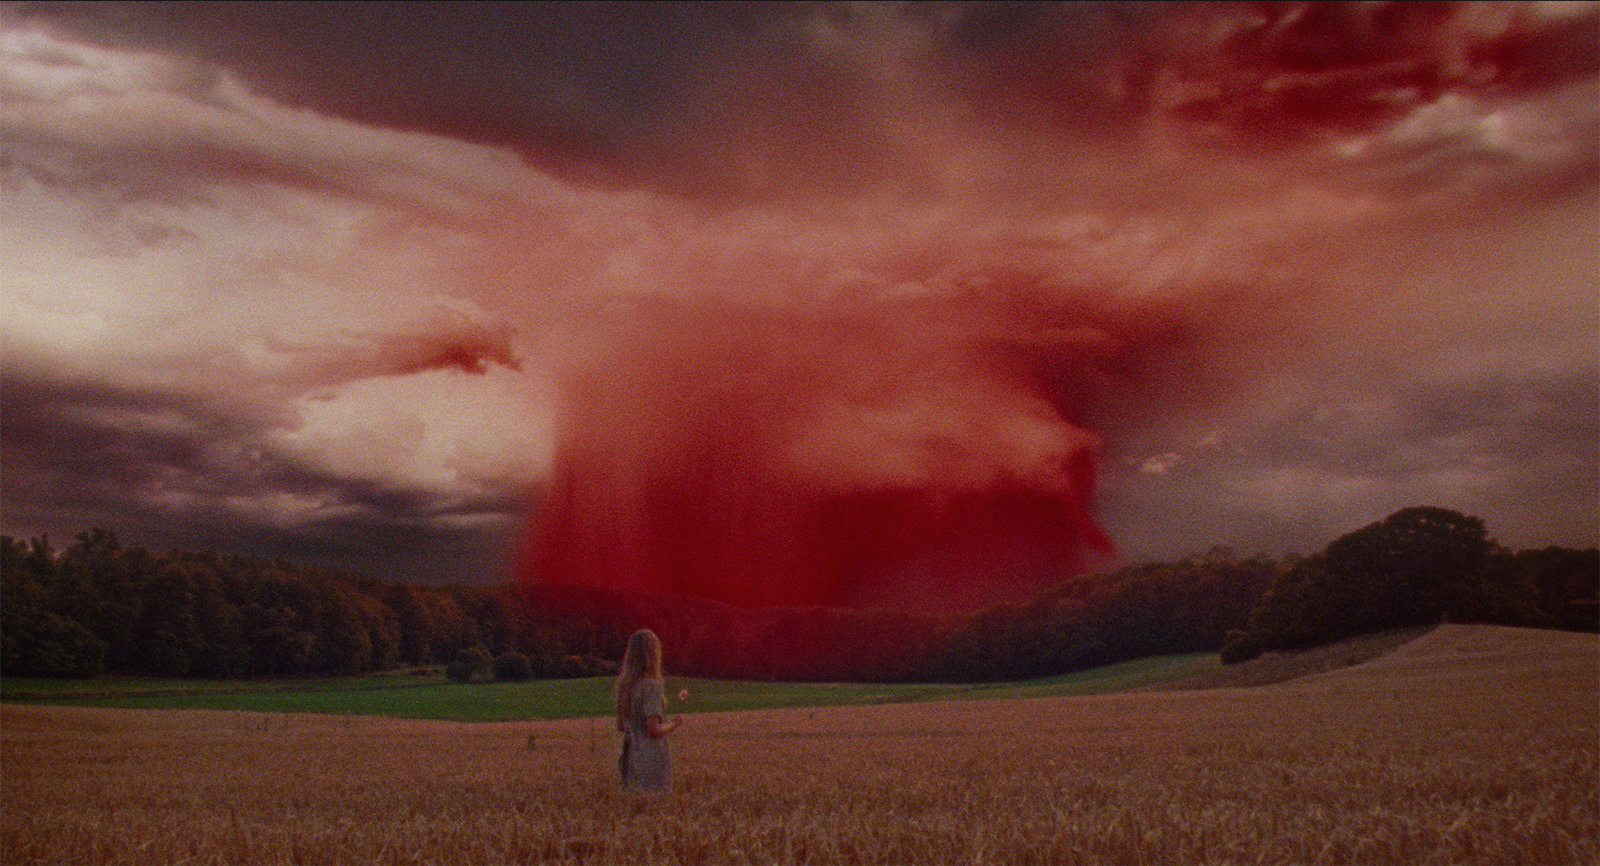 une jeune femme (la protagoniste du film) toute petite au milieu d'un champ, faisant face à un ciel écarlate (image surréaliste)